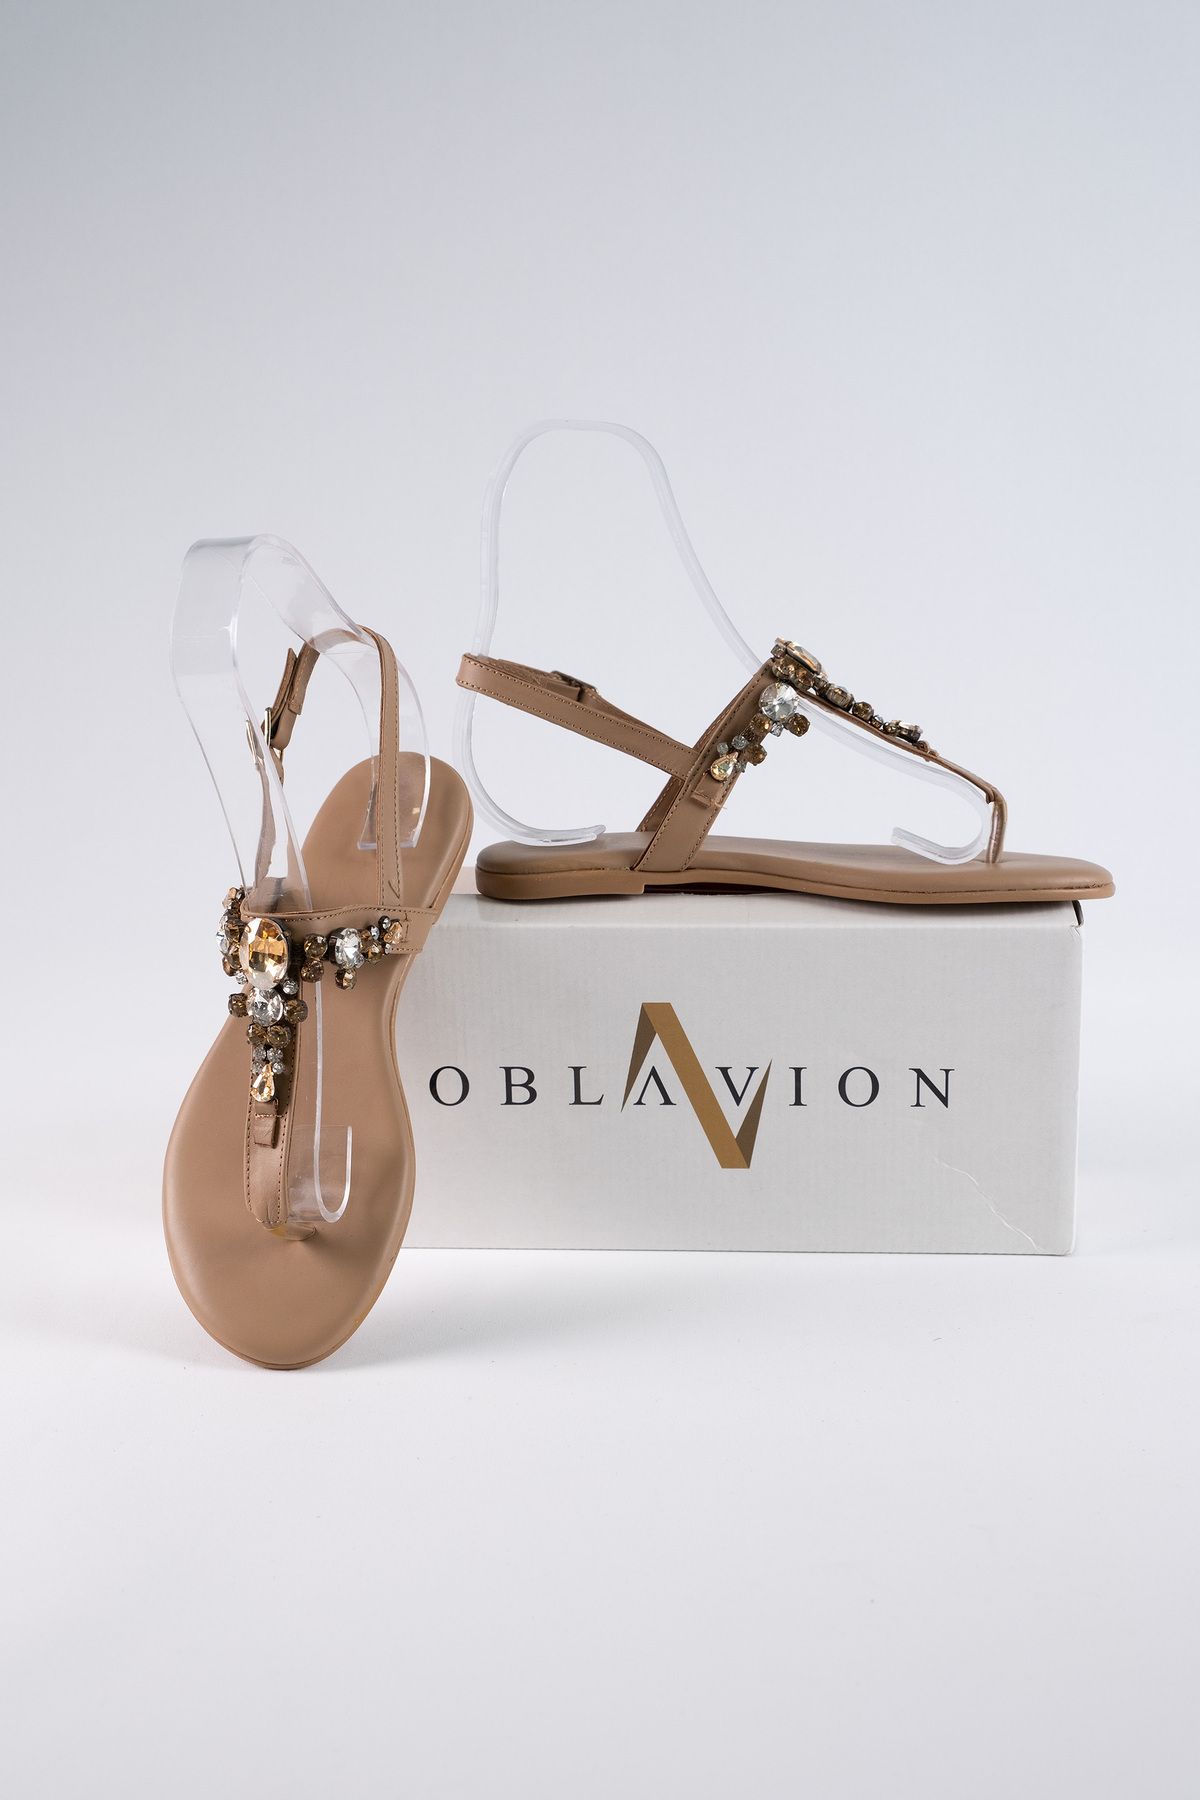 Oblavion Lavion Hakiki Deri Nude Sarı Taşlı Sandalet